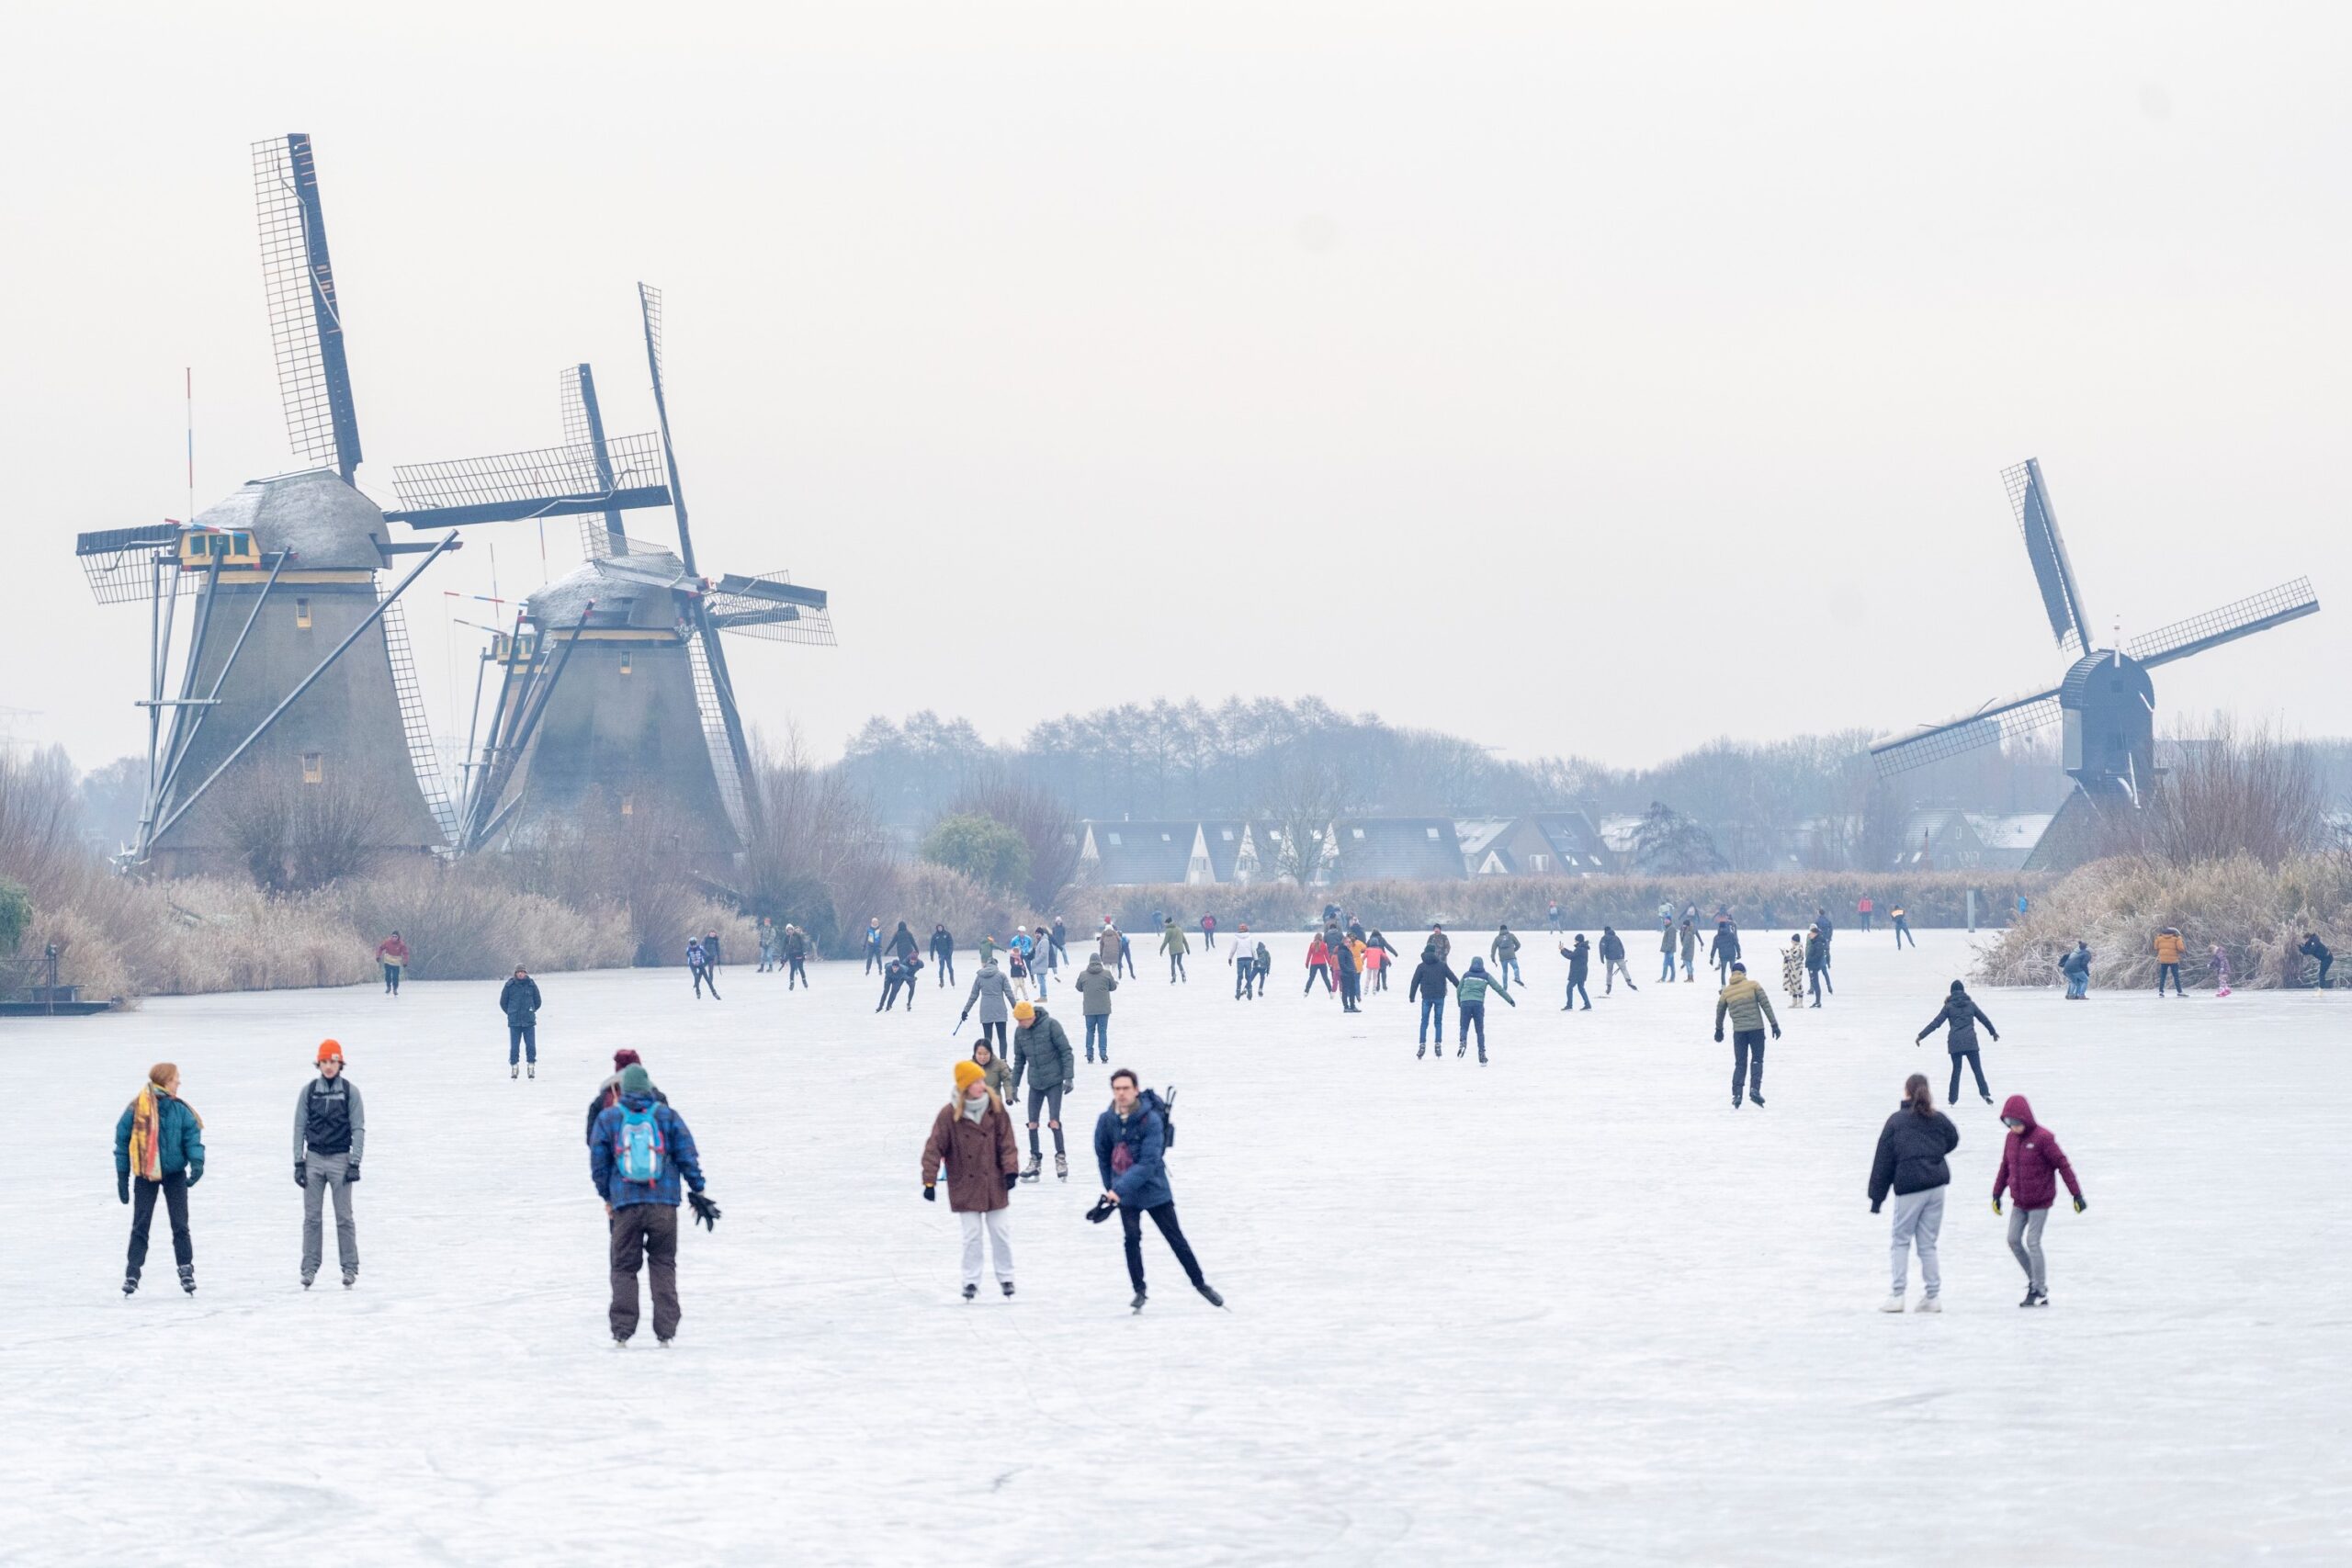 Aftrekken Conceit Brawl Schaatsers genieten van natuurijs bij Kinderdijk en Alblasserdam; feest op  de ijsbaan (foto's + dronevideo) - Alblasserdamsnieuws.nl